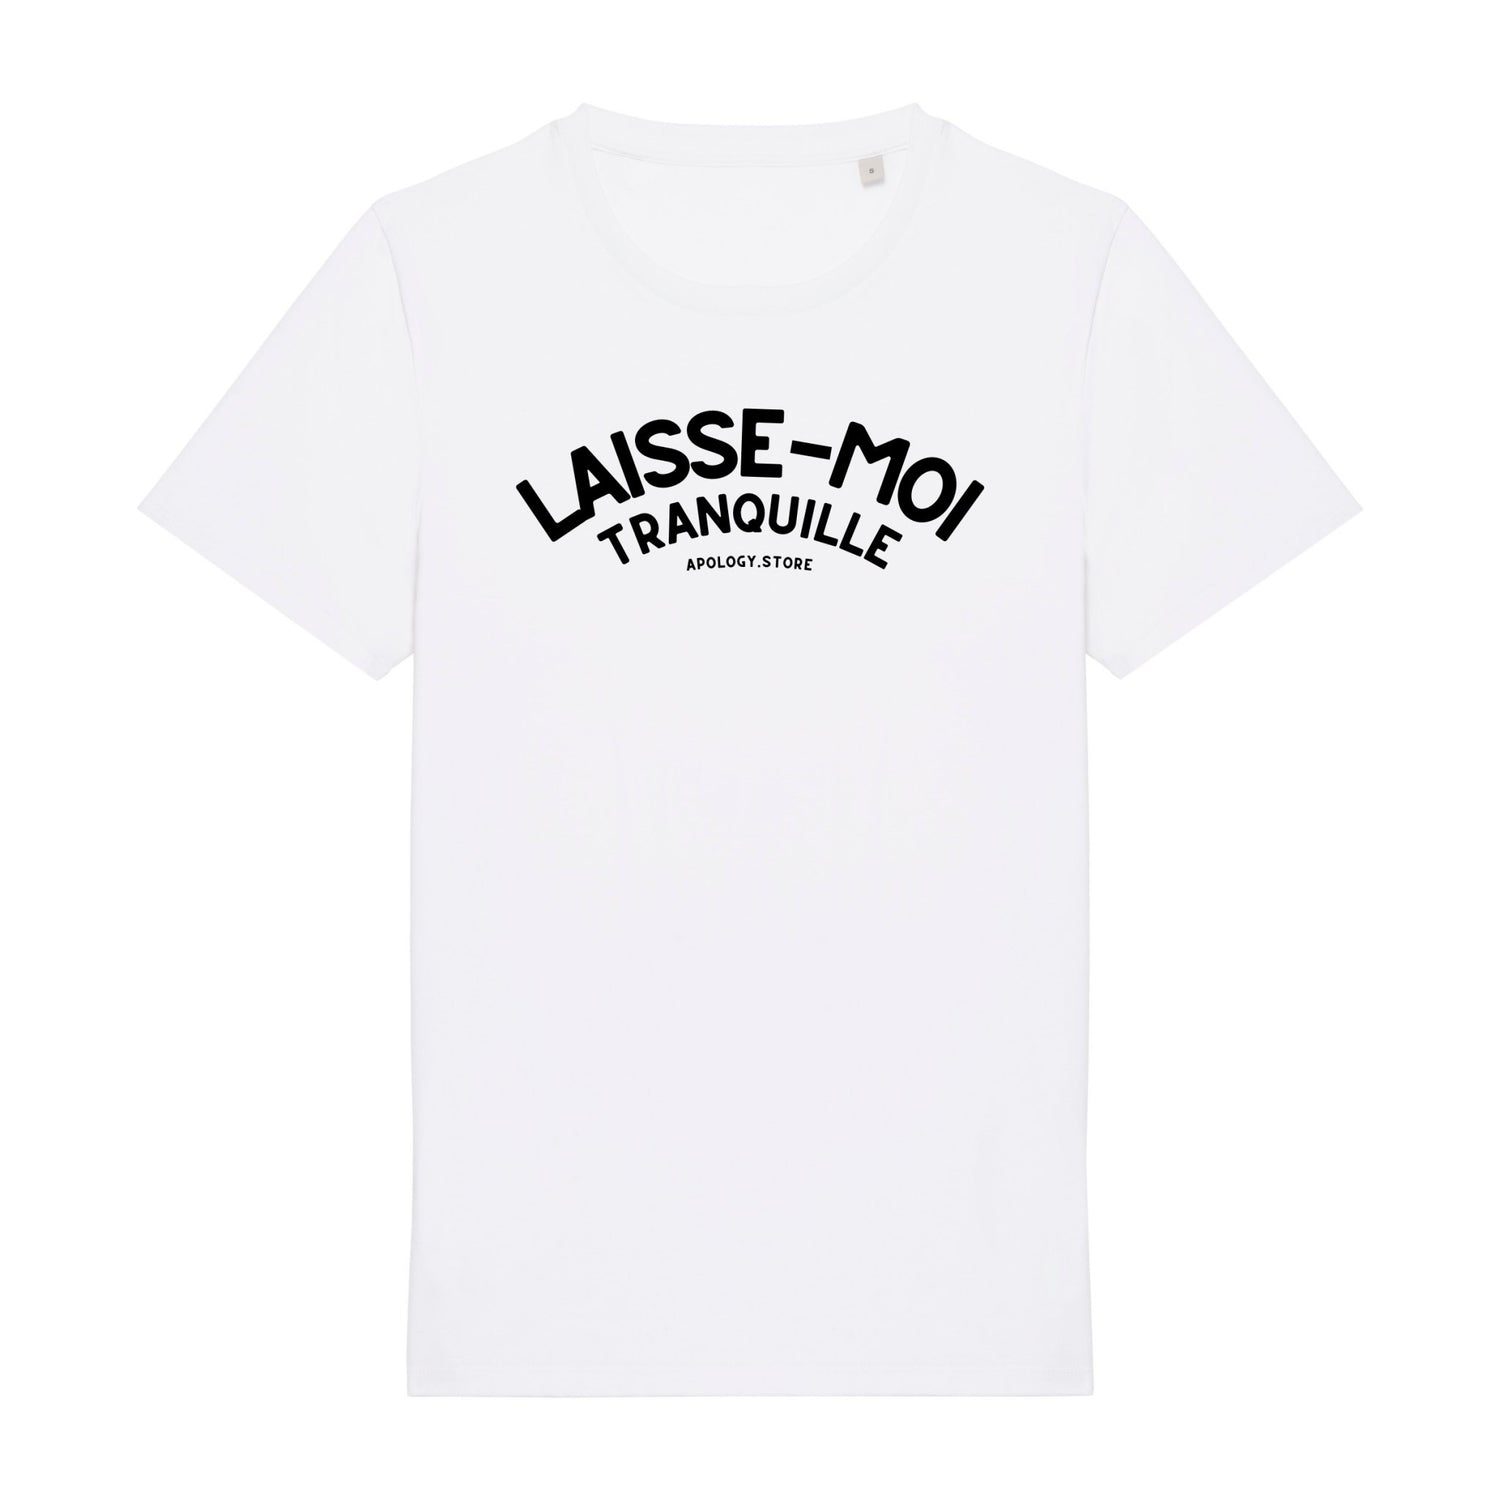 T-shirt Laisse Moi Tranquille - Fabriqué au Portugal XS Blanc - Imprimé en France